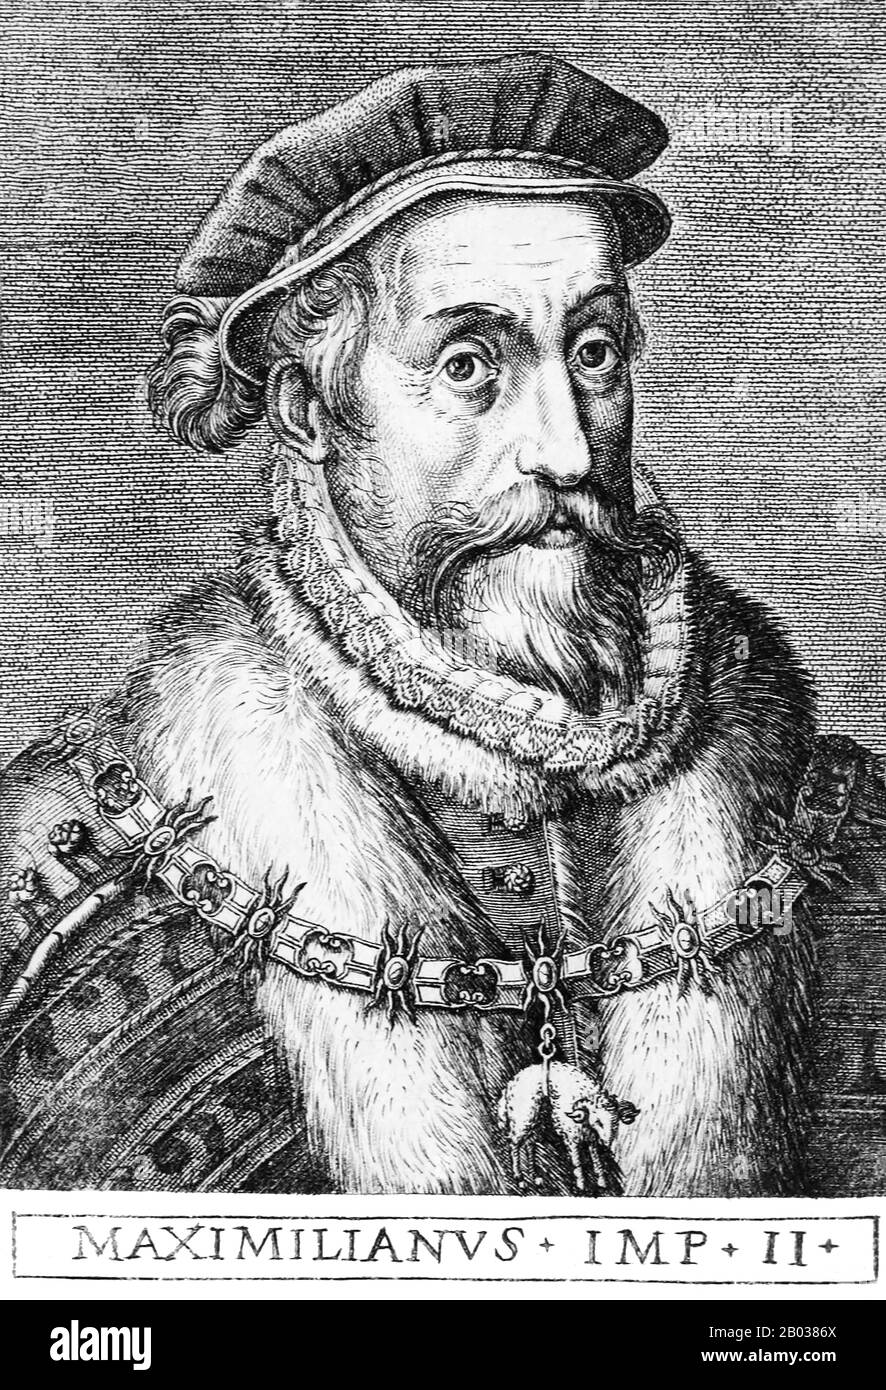 Maximilian II (1527-1576) était le fils de l'empereur Ferdinand I. Il a servi pendant les guerres italiennes en 1544, ainsi que la guerre Schmalkadic. Son oncle, l'empereur Charles V, l'a fait épouser son cousin et la fille de Charles Marie d'Espagne en 1548, et Maximilian a agi temporairement comme représentant de l'empereur en Espagne. Les questions de succession ont rapidement vu des ennuis se préparer entre les branches allemandes et espagnoles de la dynastie des Habsbourg, et on soupçonne que Maximilian a été empoisonné en 1552 par ceux de la ligue avec son cousin et son beau-frère, Philippe II La relation entre Maximilian et son cousin Banque D'Images